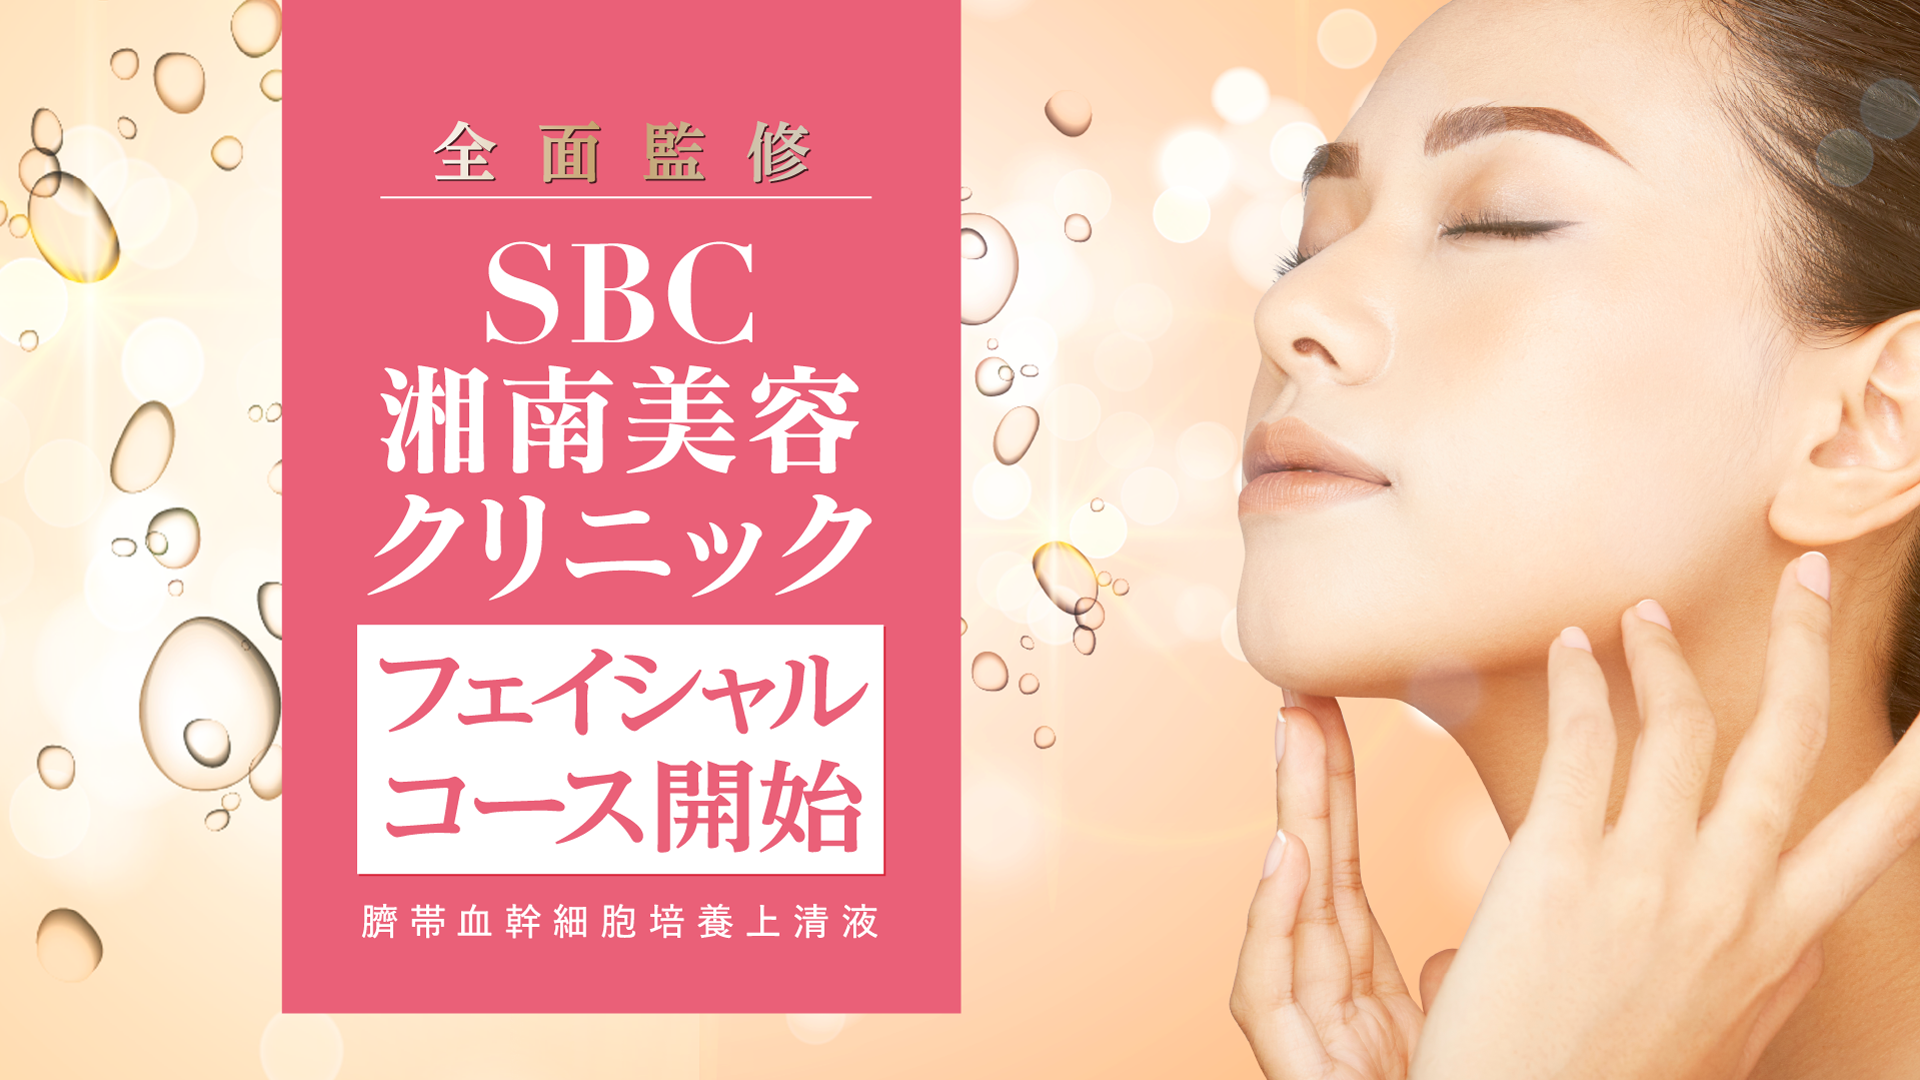 SBC湘南美容クリニックフェイシャルコース開始 臍帯血幹細胞培養上清液